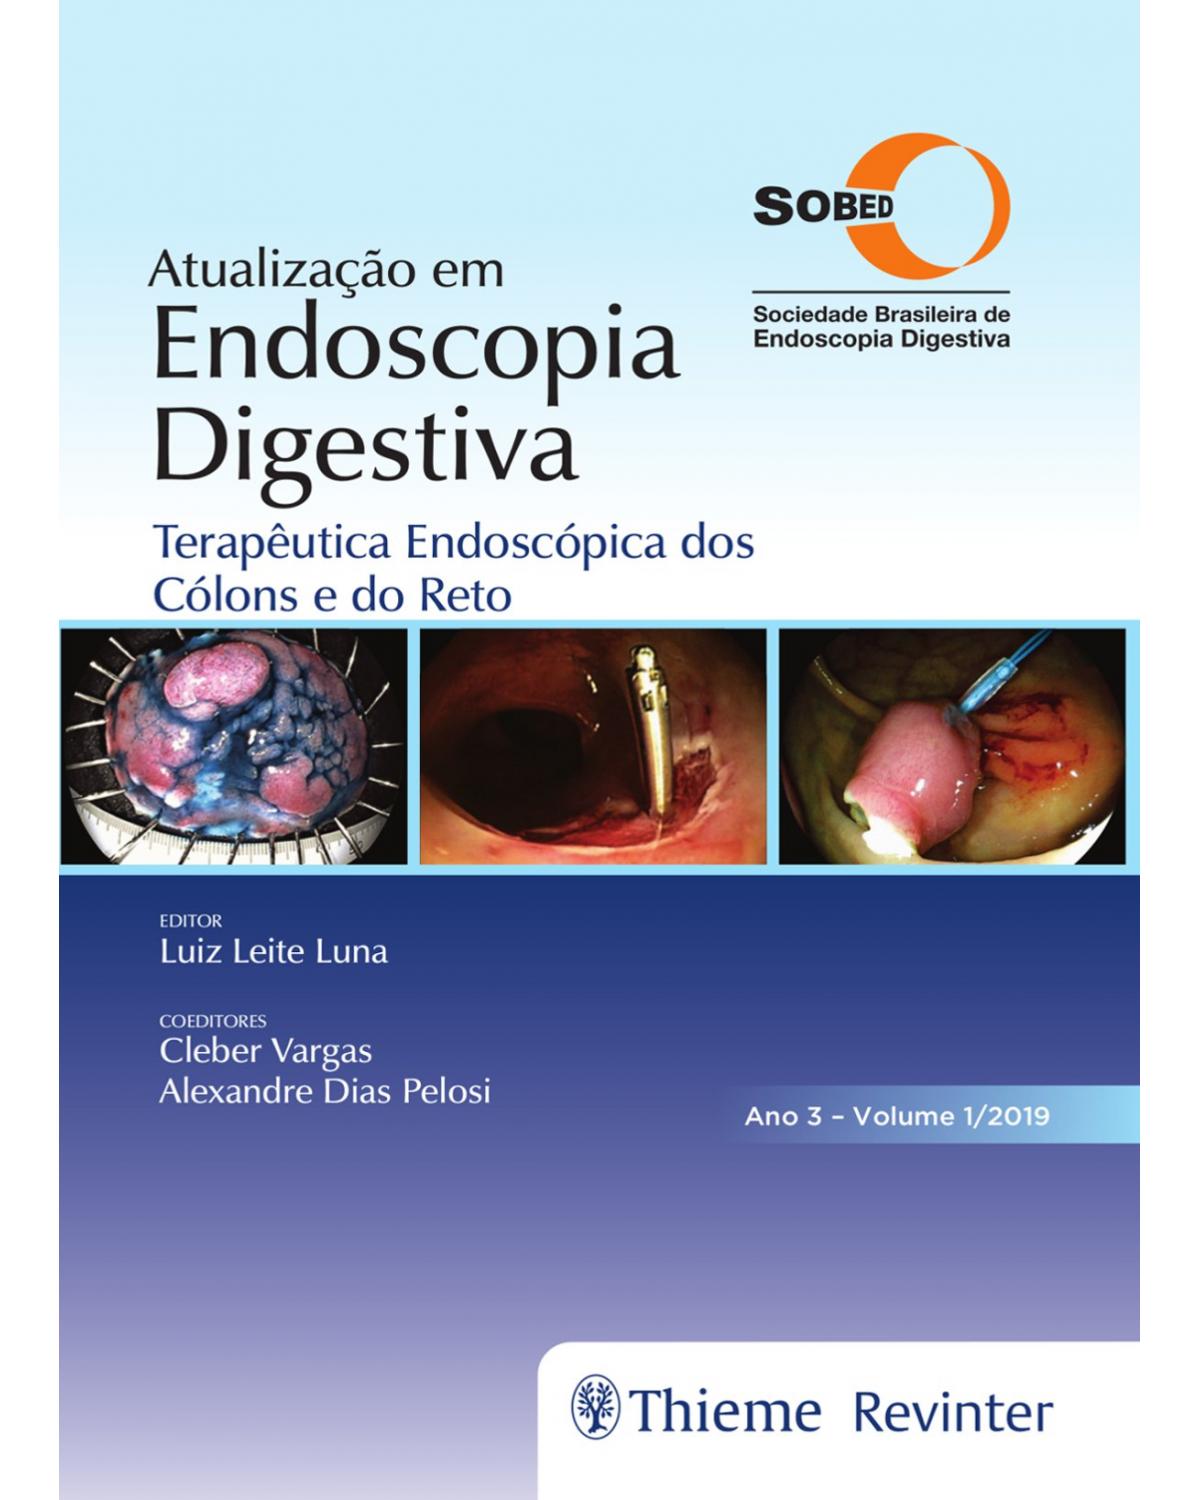 Atualização em endoscopia digestiva - Volume 1: terapêutica endoscópica dos cólons e do reto - Ano 3 - 1ª Edição | 2019